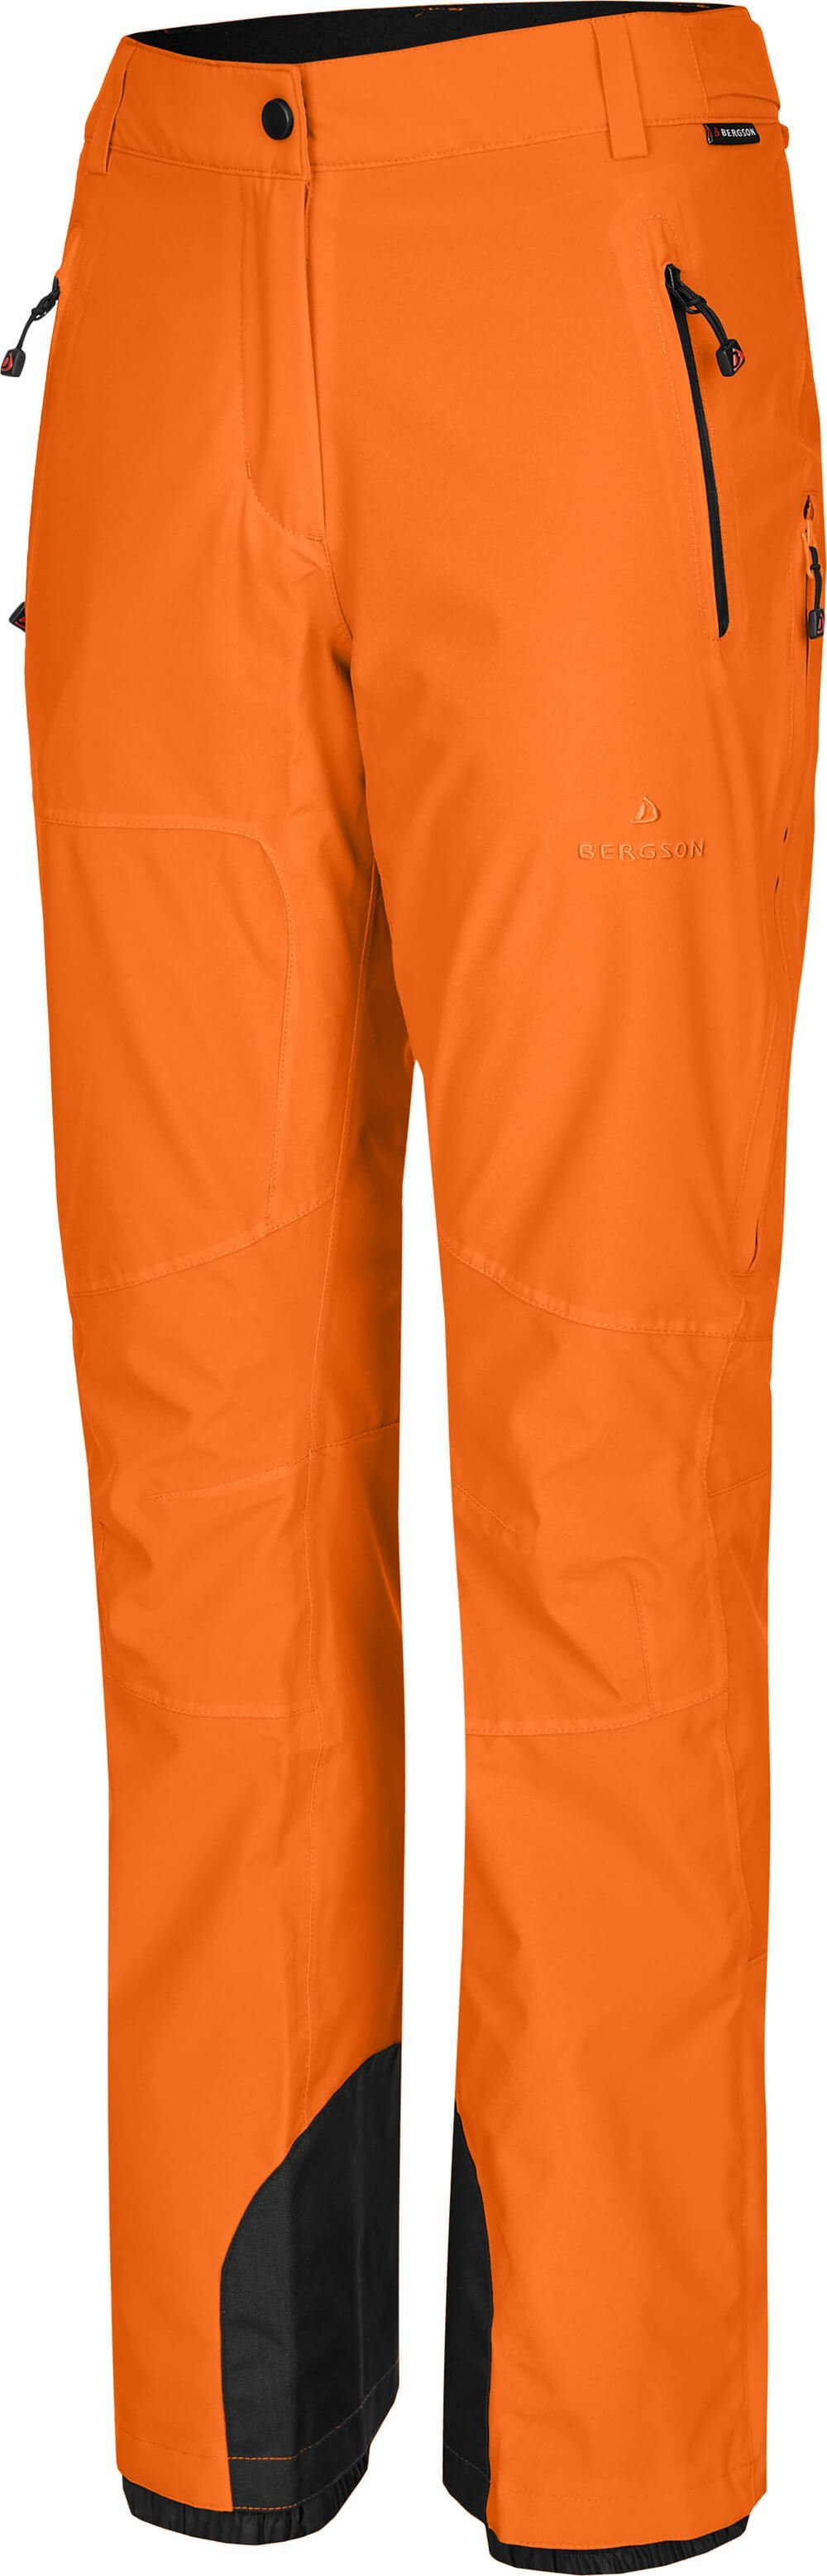 Bergson Skihose ICE light Slim mm Wassersäule, Damen Skihose, 20000 Normalgrößen, orange unwattiert